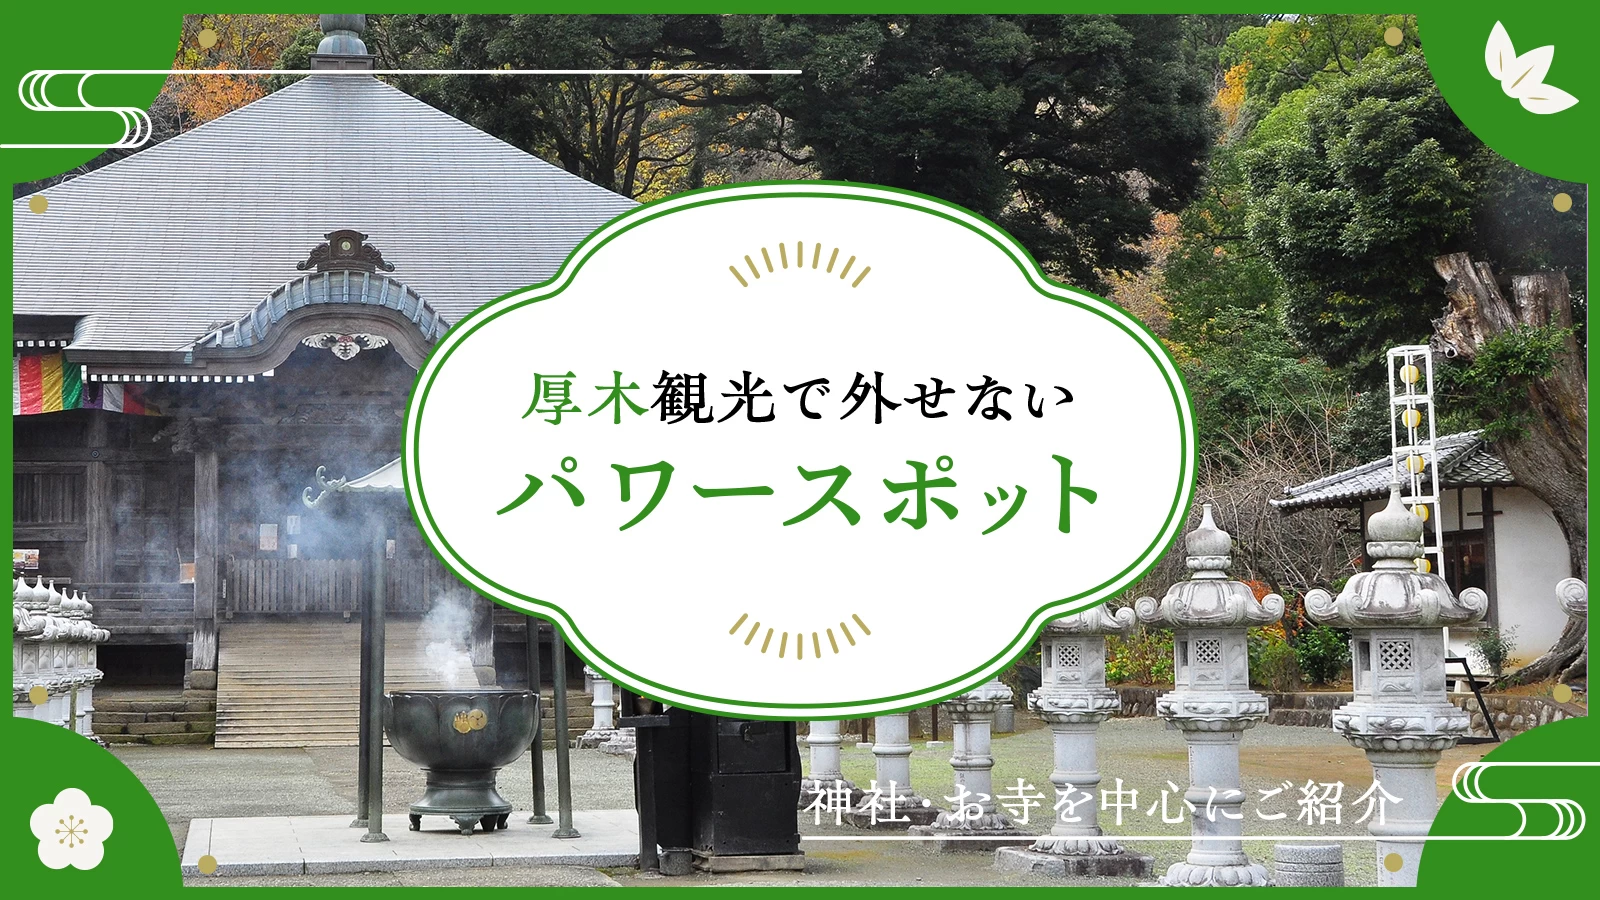 【神奈川】厚木観光で外せないおすすめパワースポット8選 神社・お寺を中心に紹介